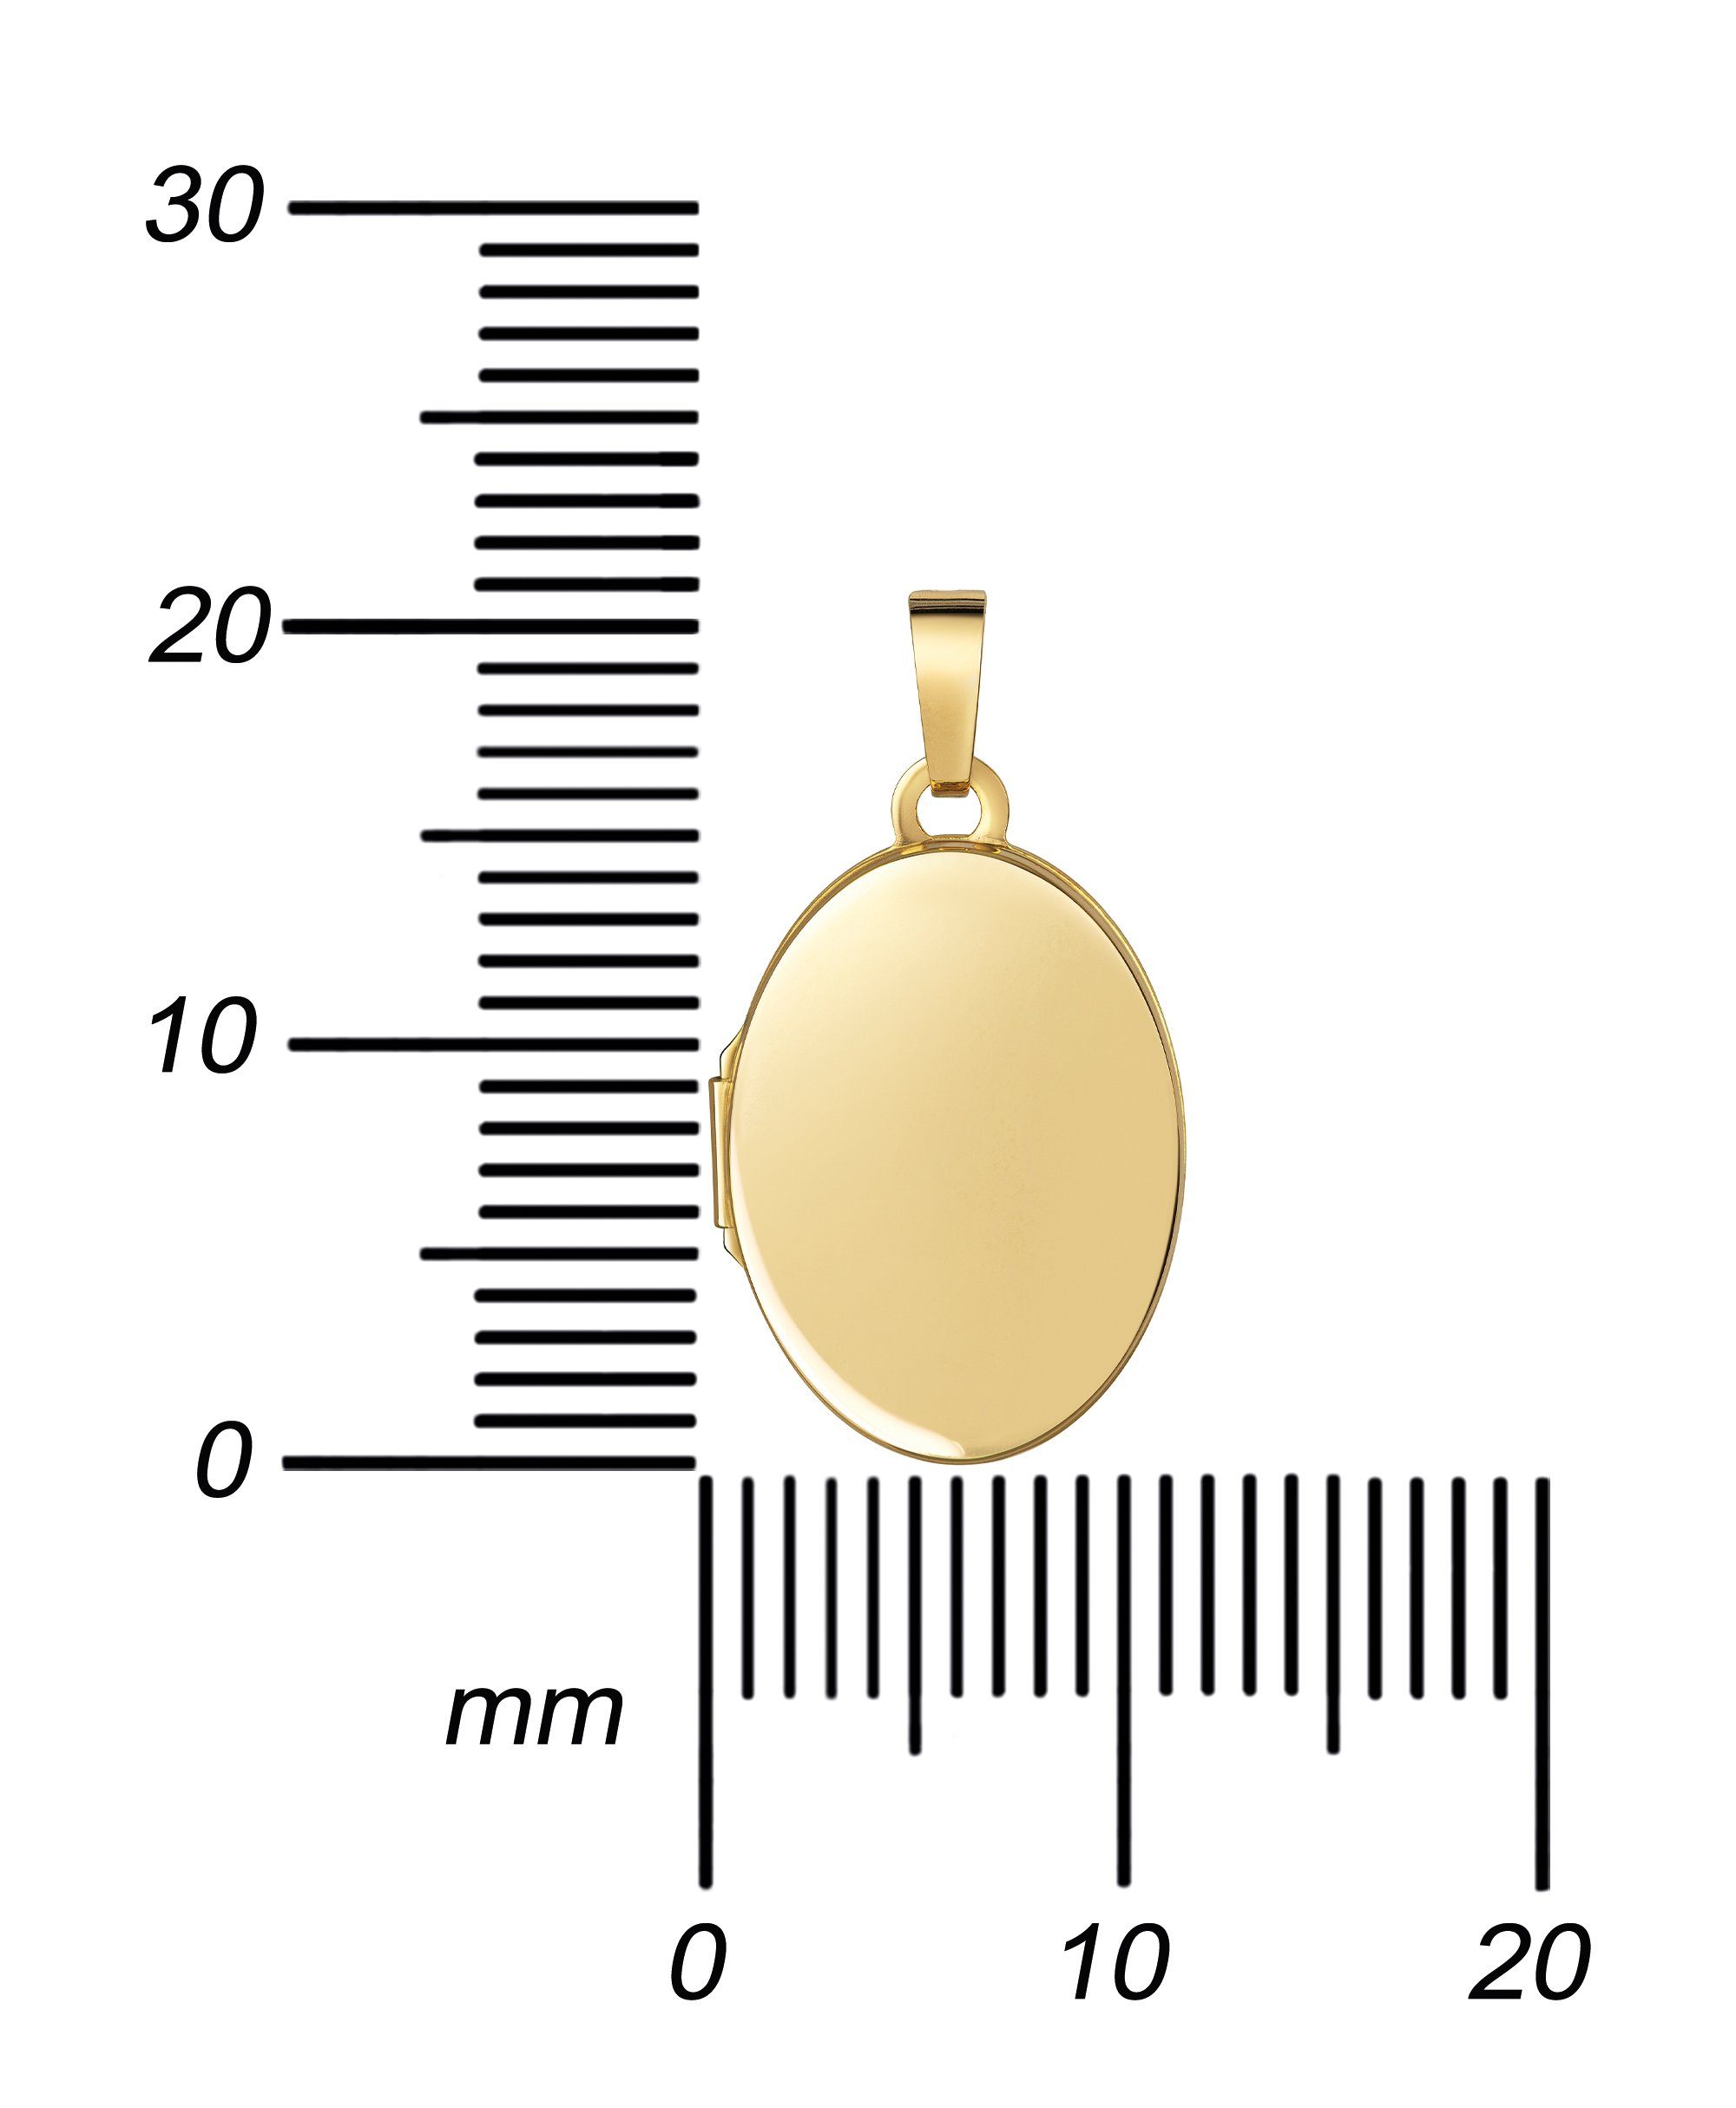 JEVELION Amulett Medaillon Gold 585 für für Anhänger zum - Kette aufklappbar Kette. oder Mädchen), 2 wählbar Öffnen vergoldet cm 70 (Fotomedaillon 36 Damen Bilder Länge und - ohne Mit Gold